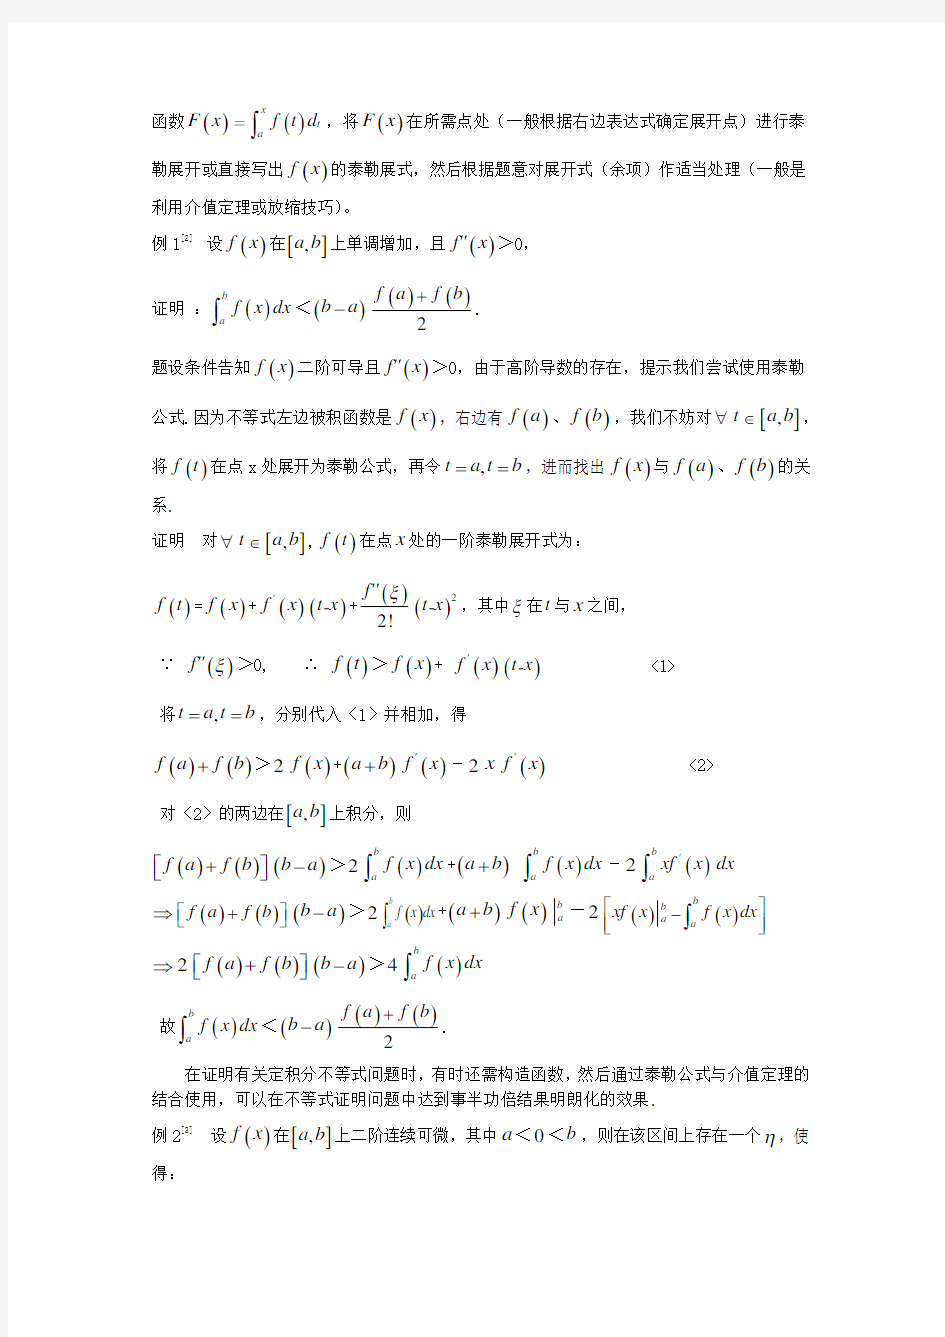 19泰勒公式在证明不等式中的几个应用